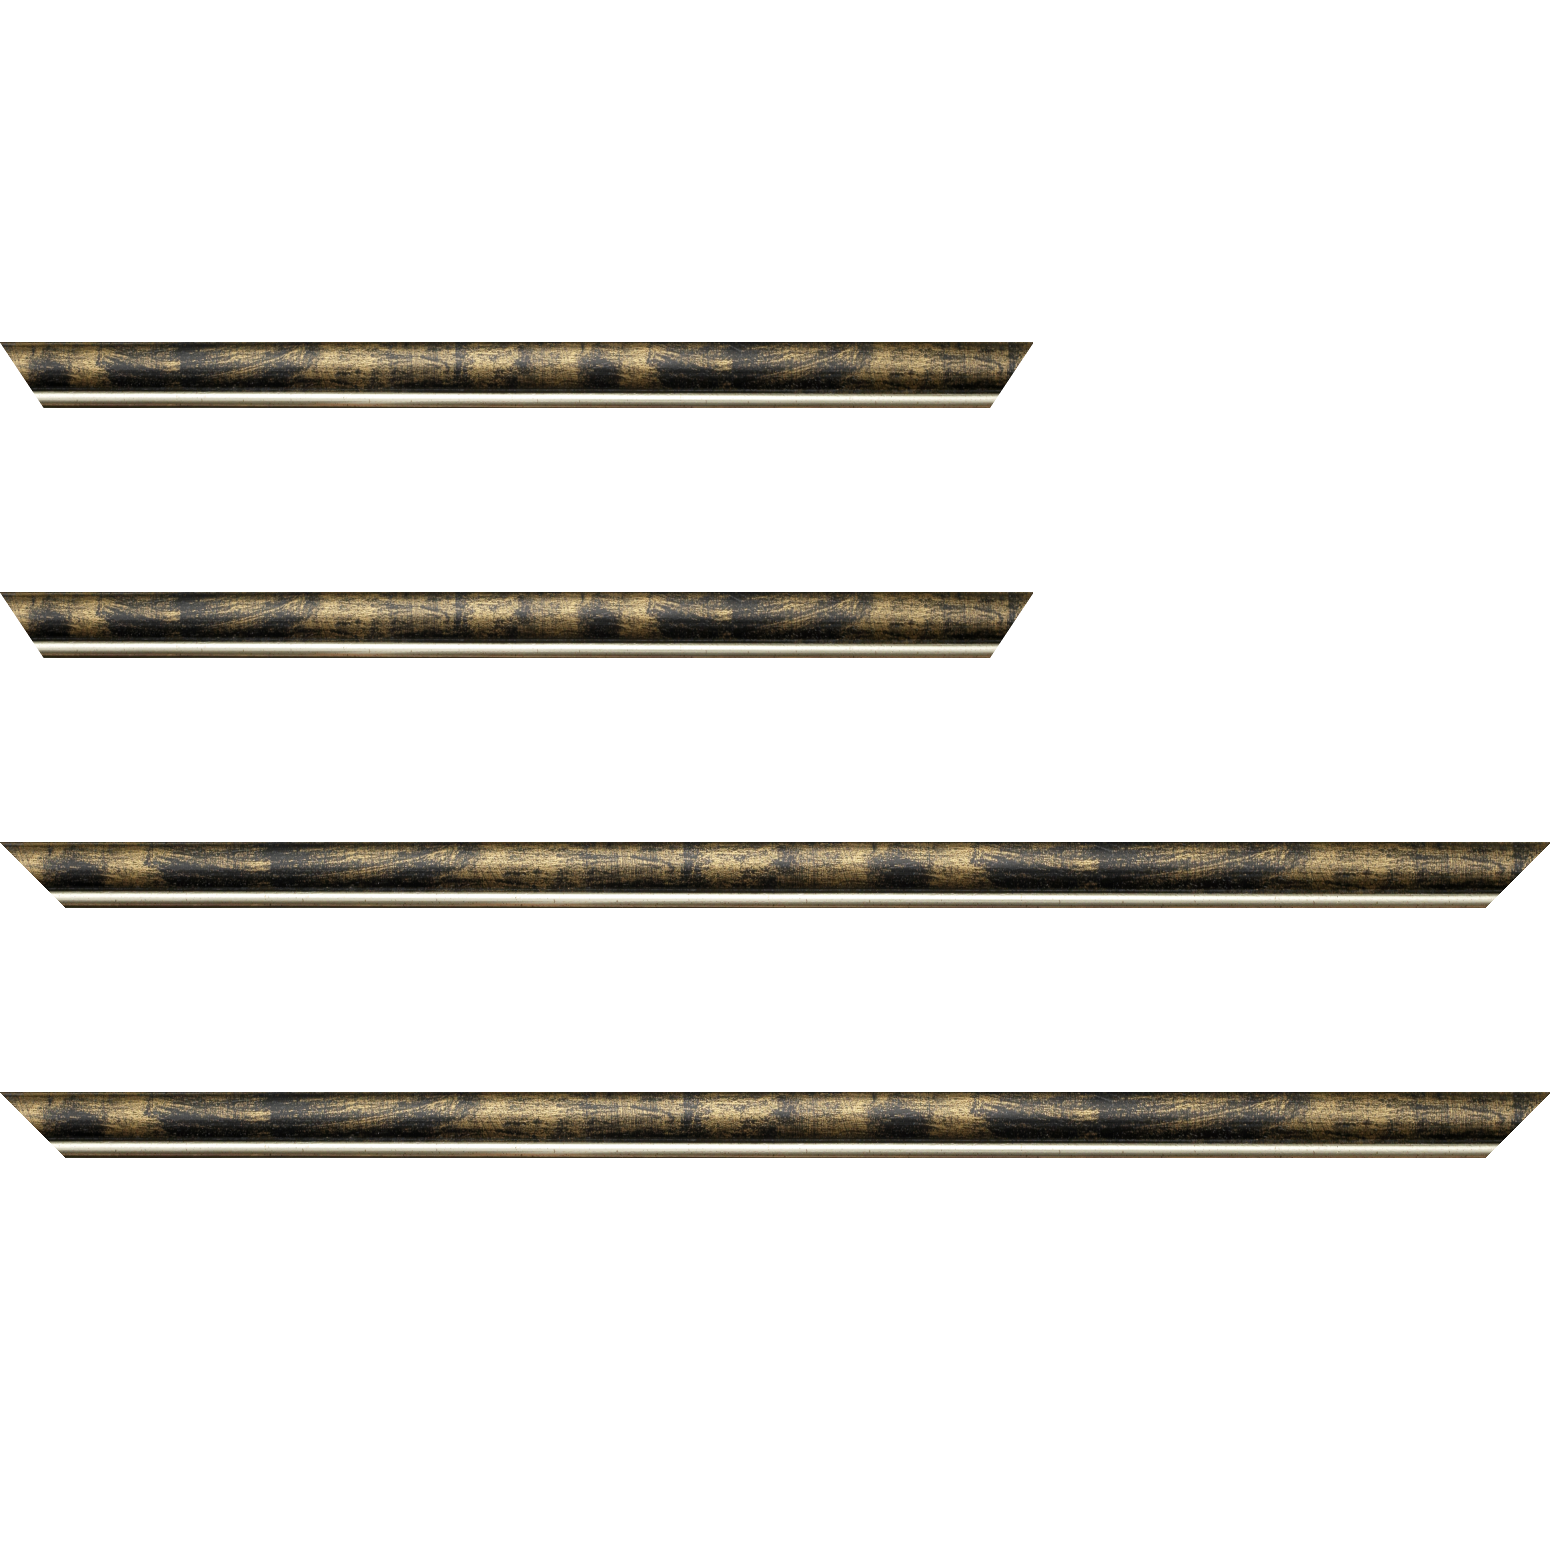 Baguette bois profil arrondi largeur 2.1cm  couleur noir fond or filet argent chaud - 30x60